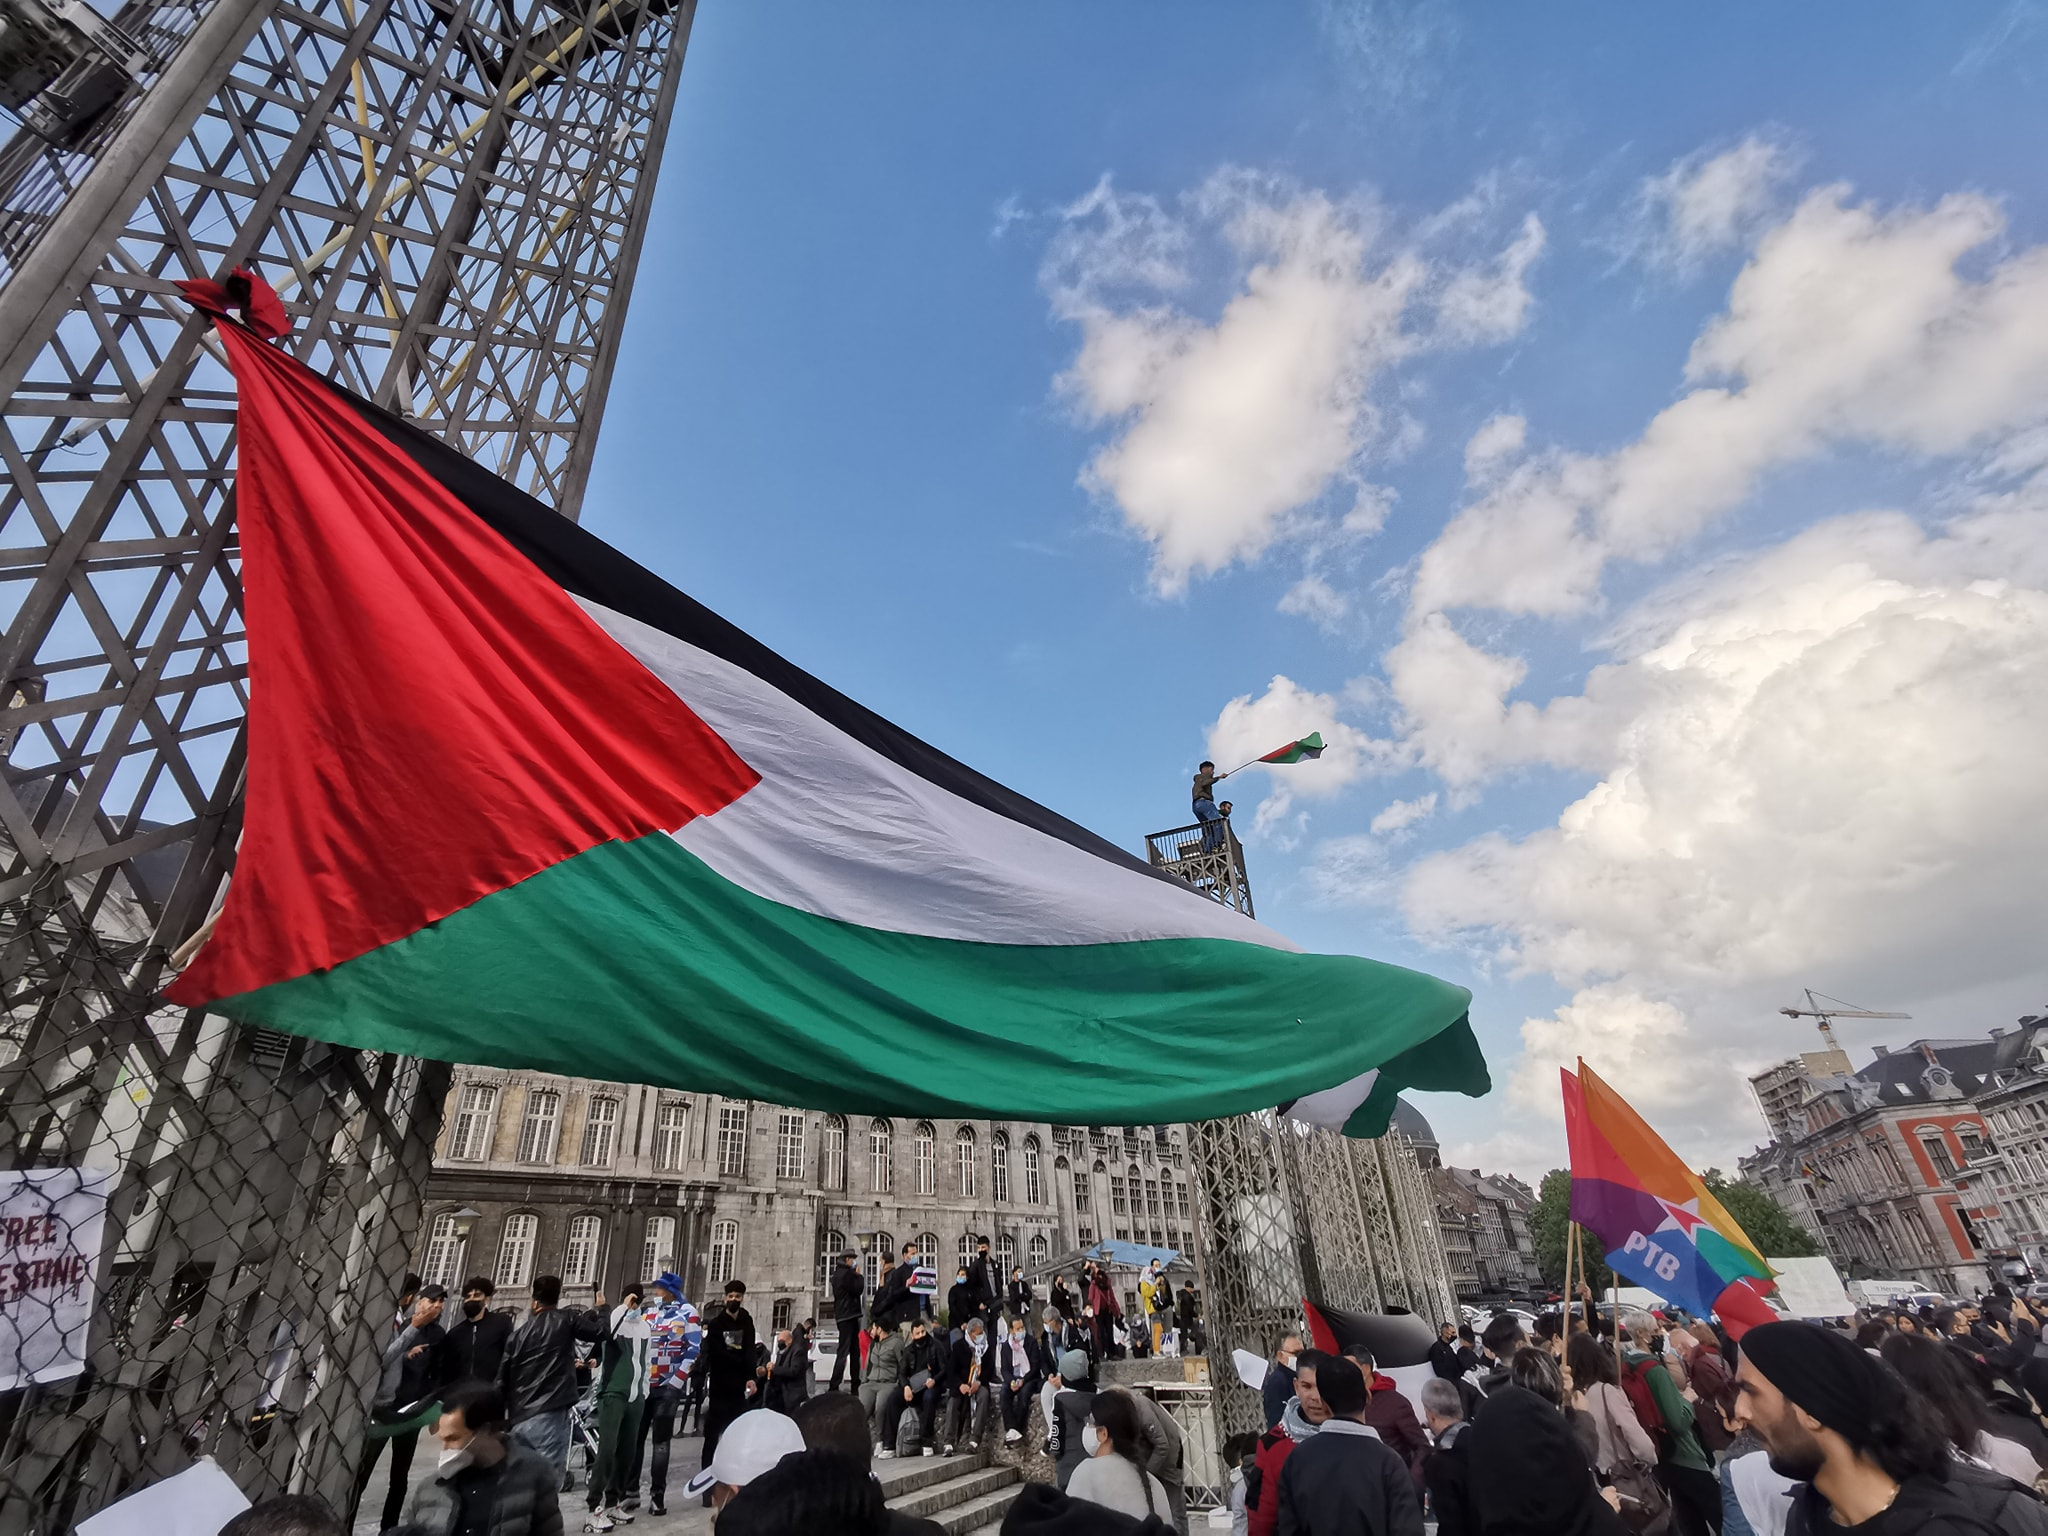 La Ville de Liège doit renforcer son soutien au peuple palestinien en coupant ses liens avec le régime d’apartheid israélien